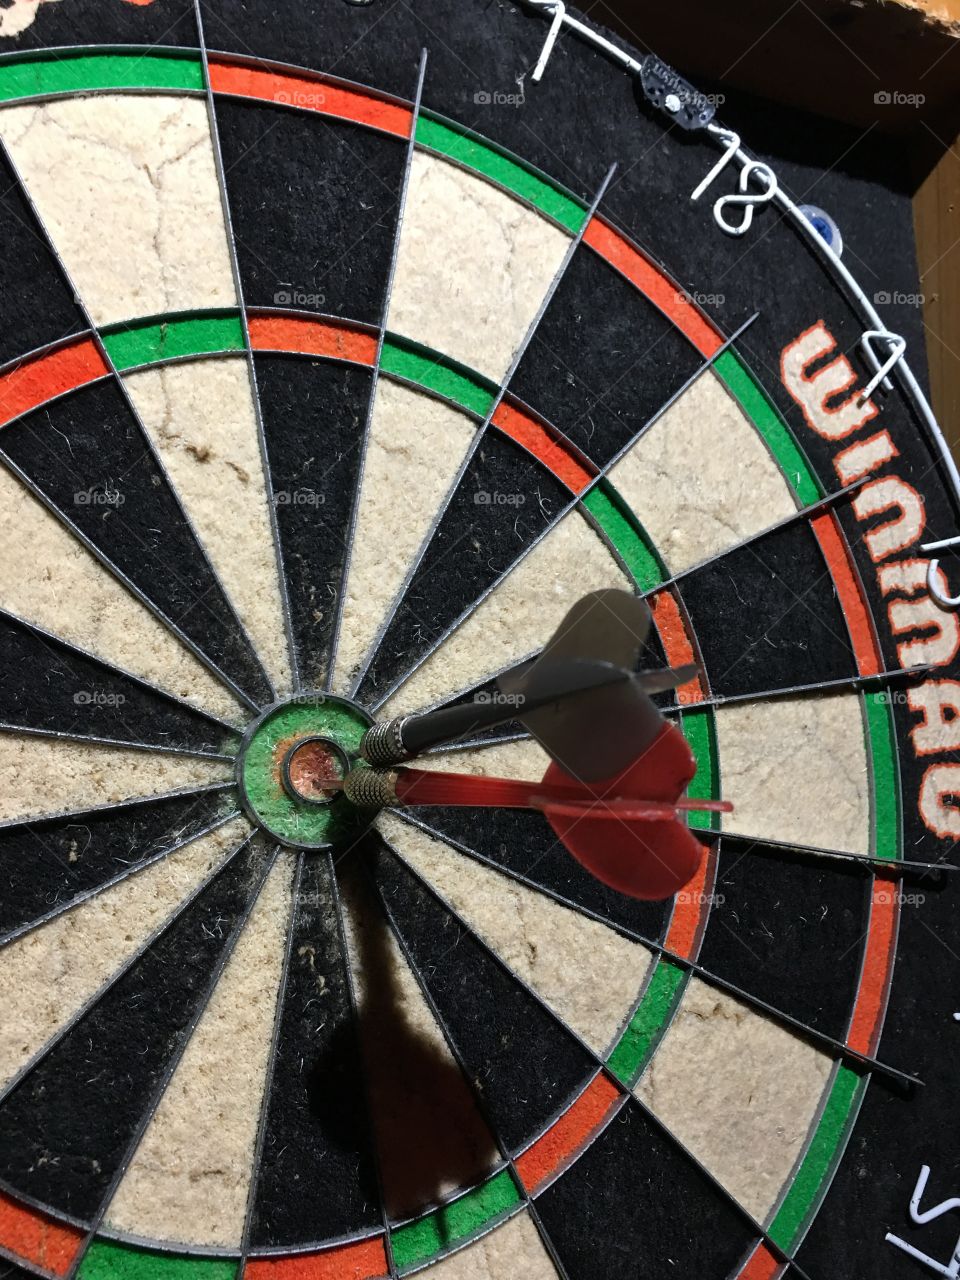 Double bullseye